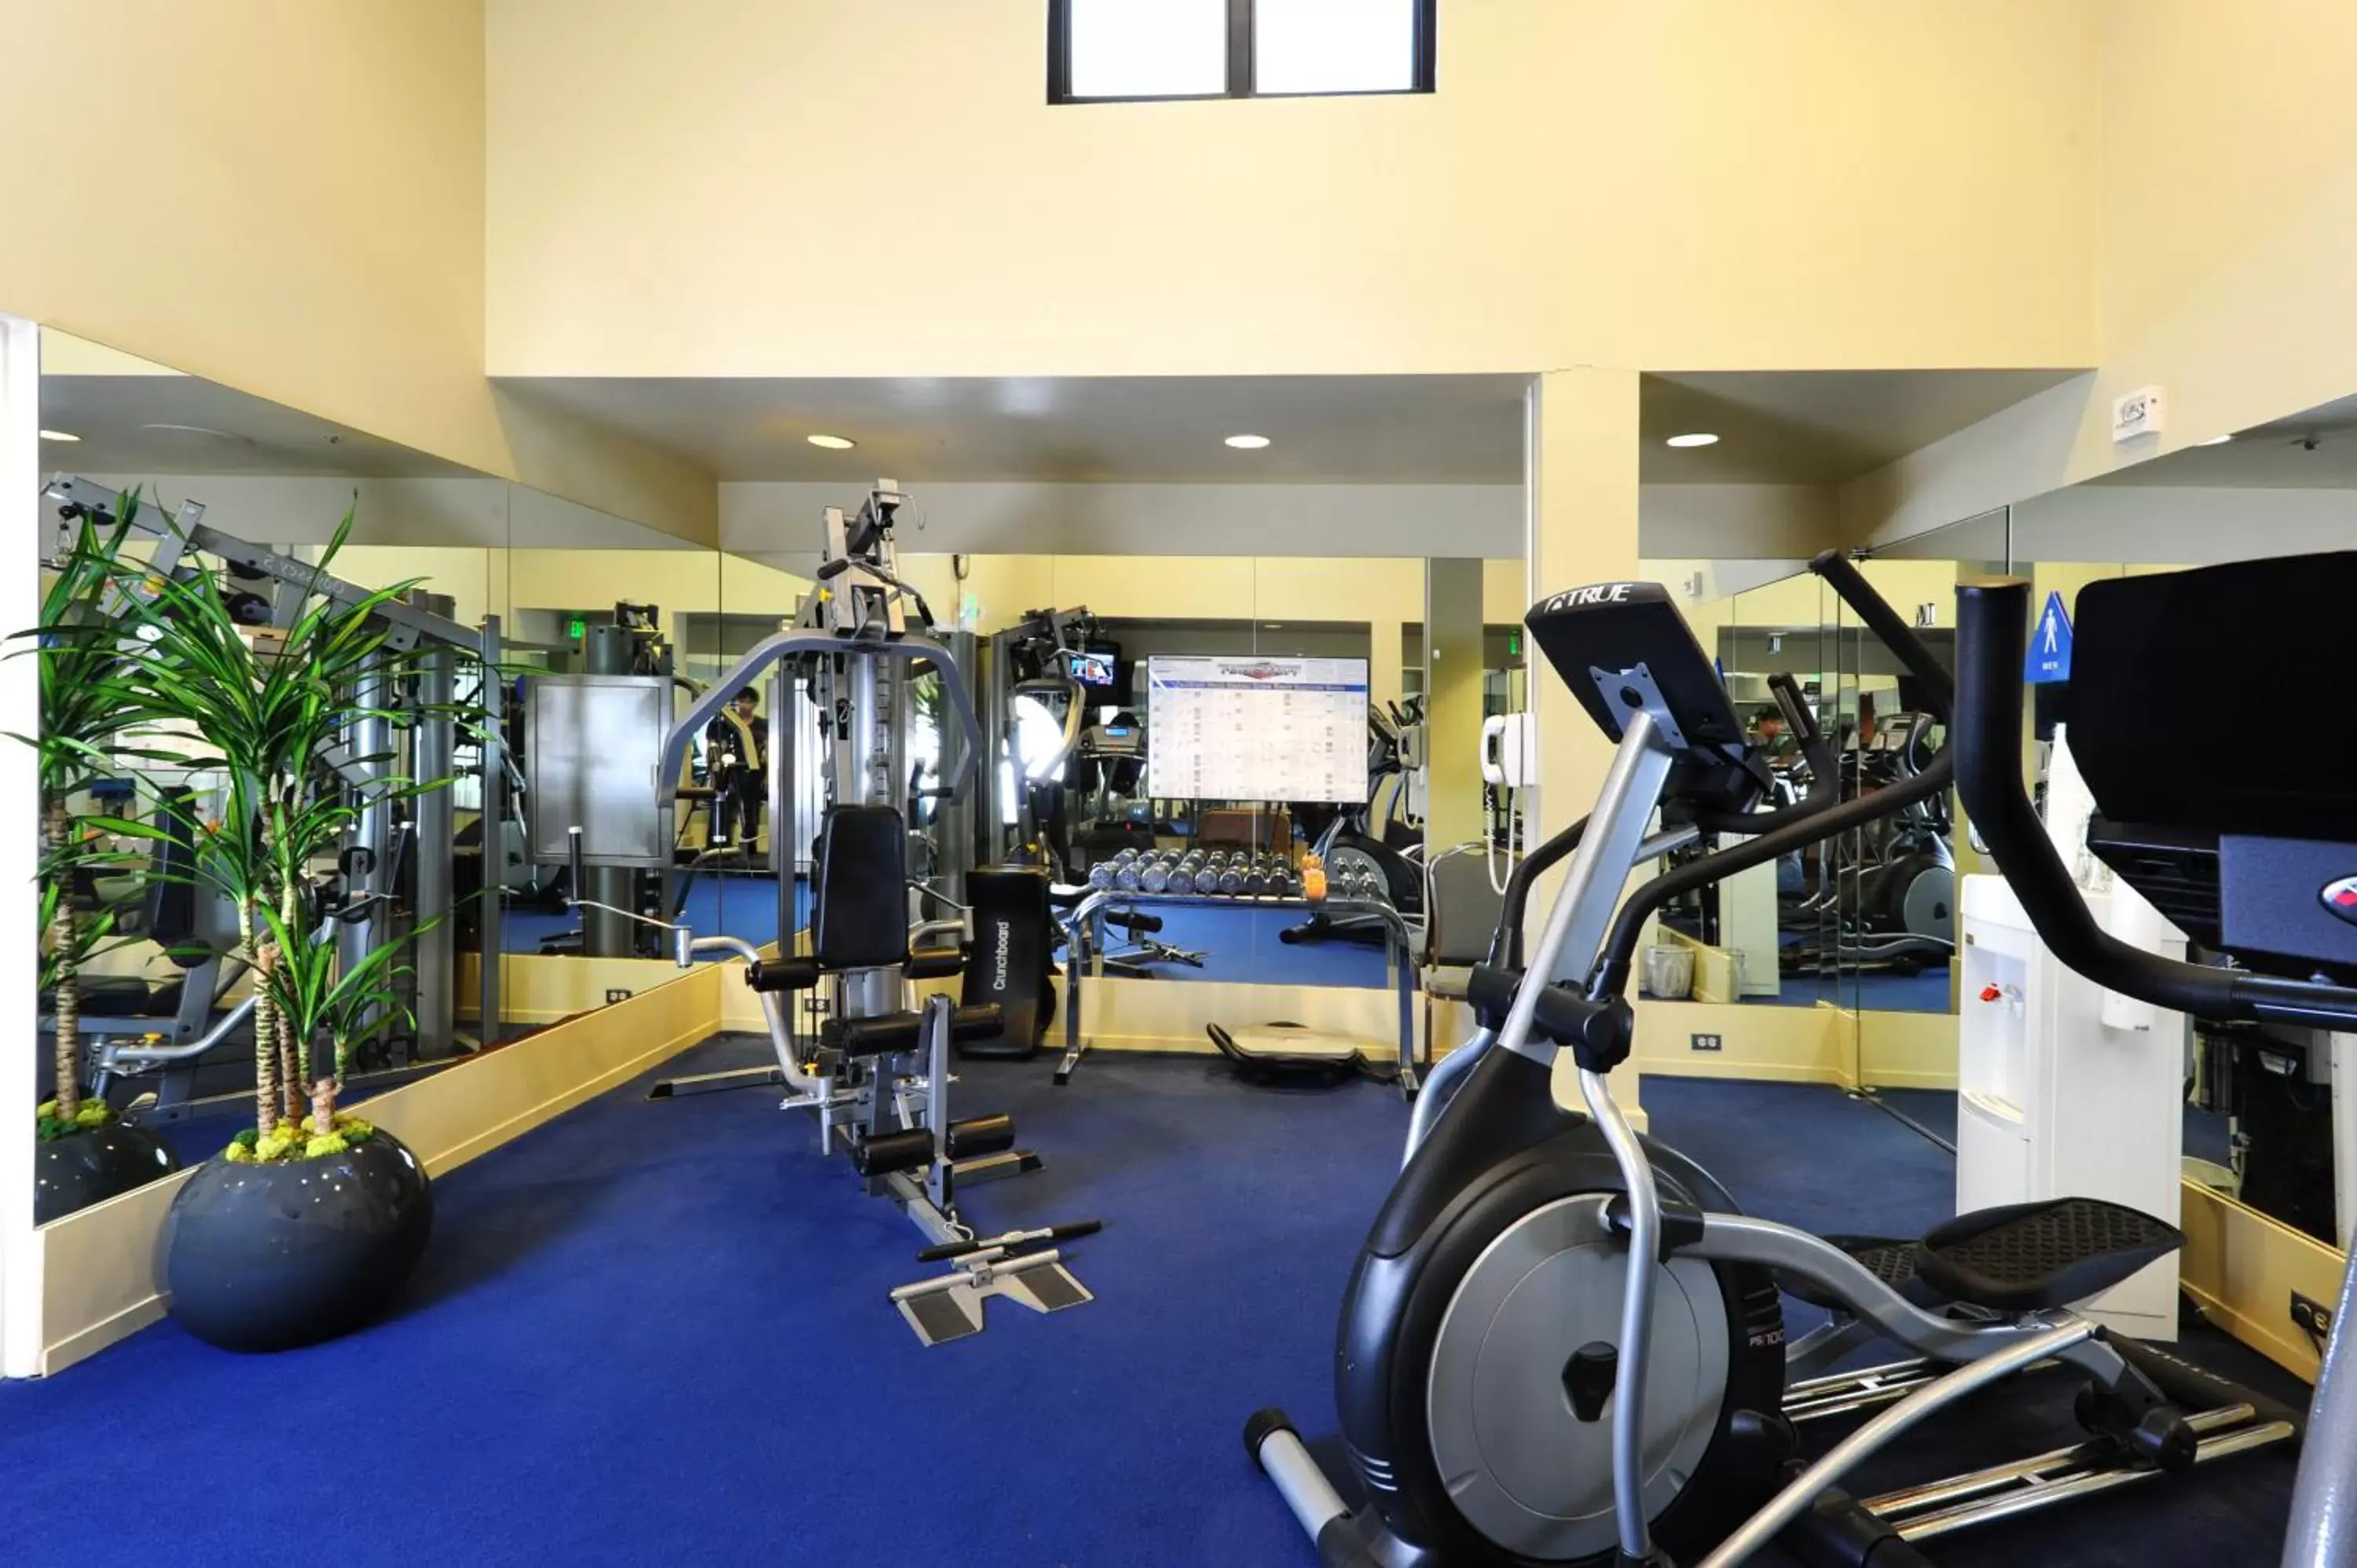 Fitness centre/facilities, Fitness Center/Facilities in Club Donatello